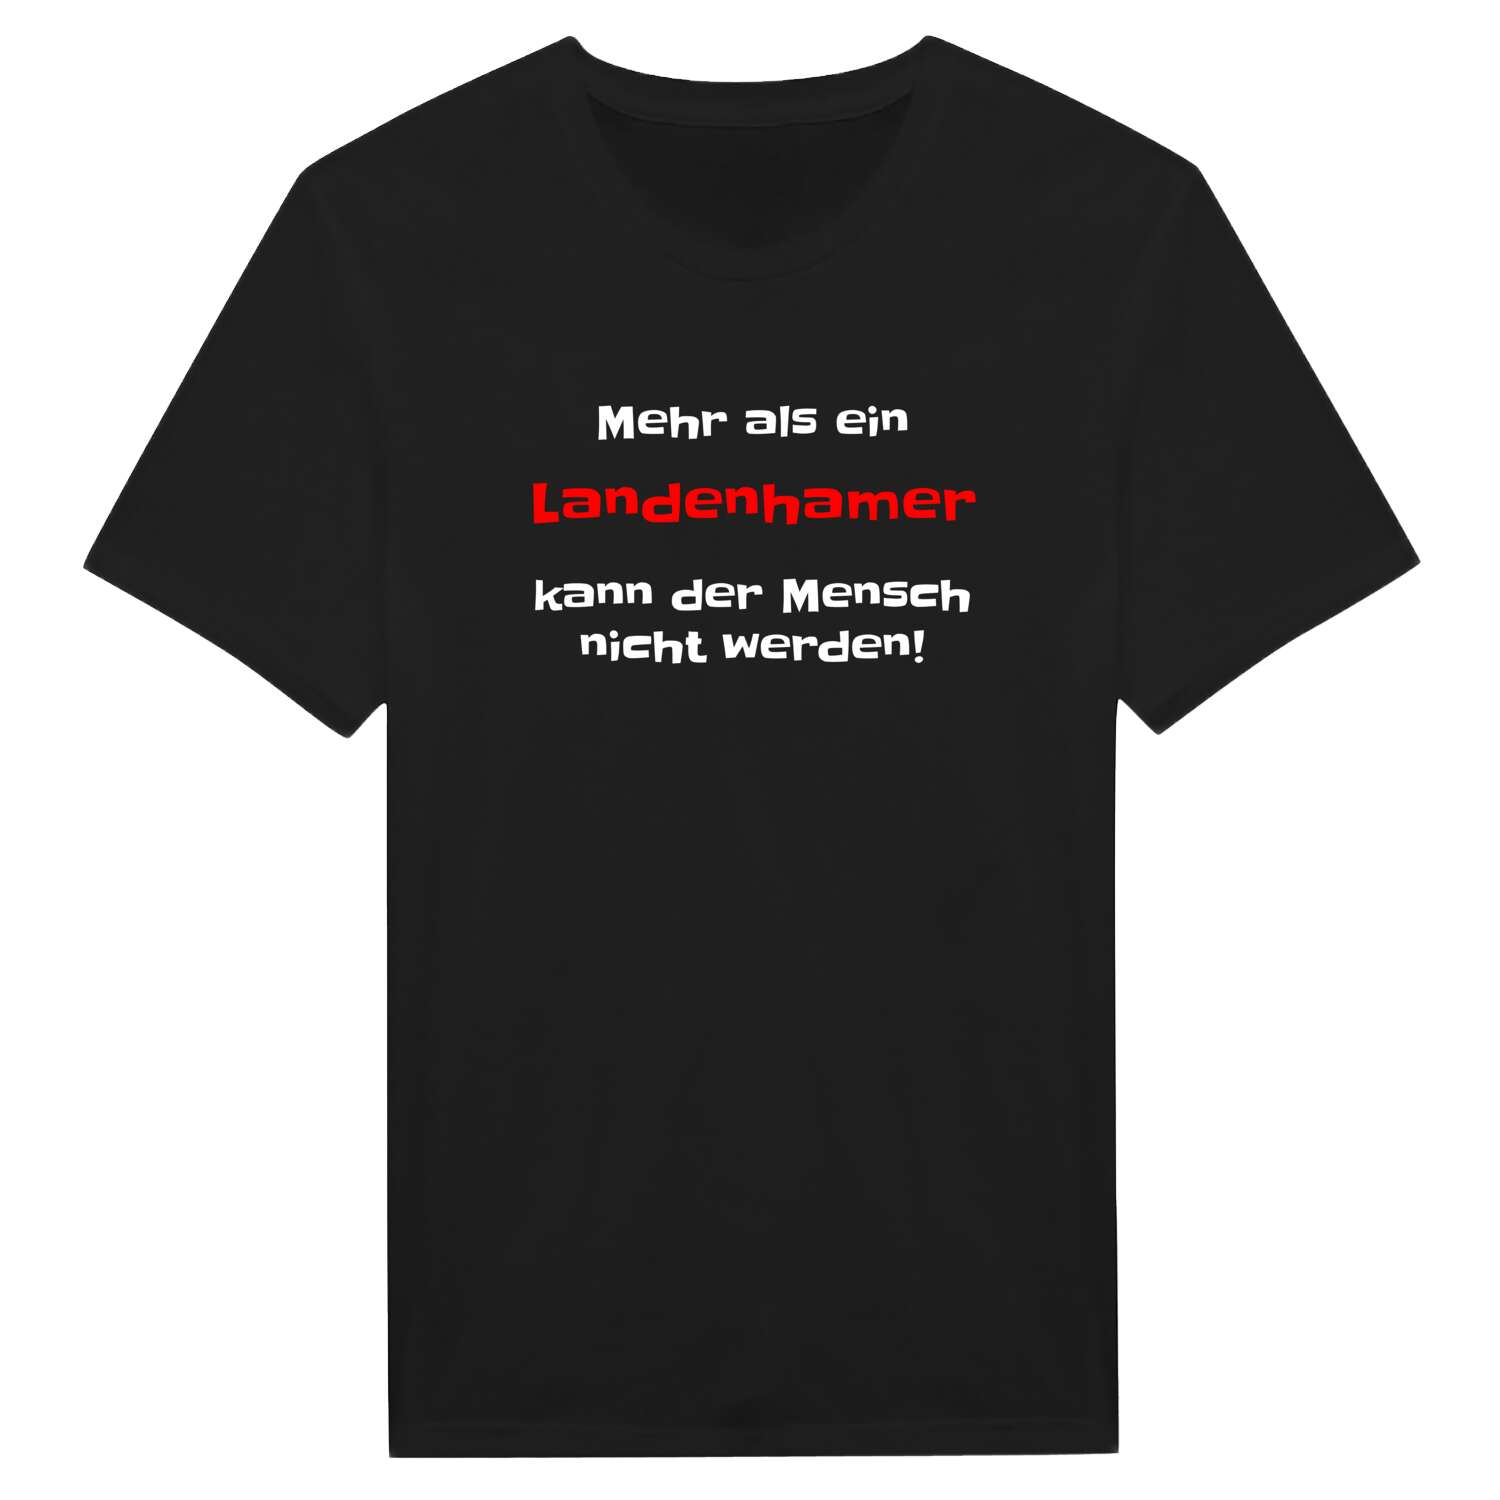 Landenham T-Shirt »Mehr als ein«